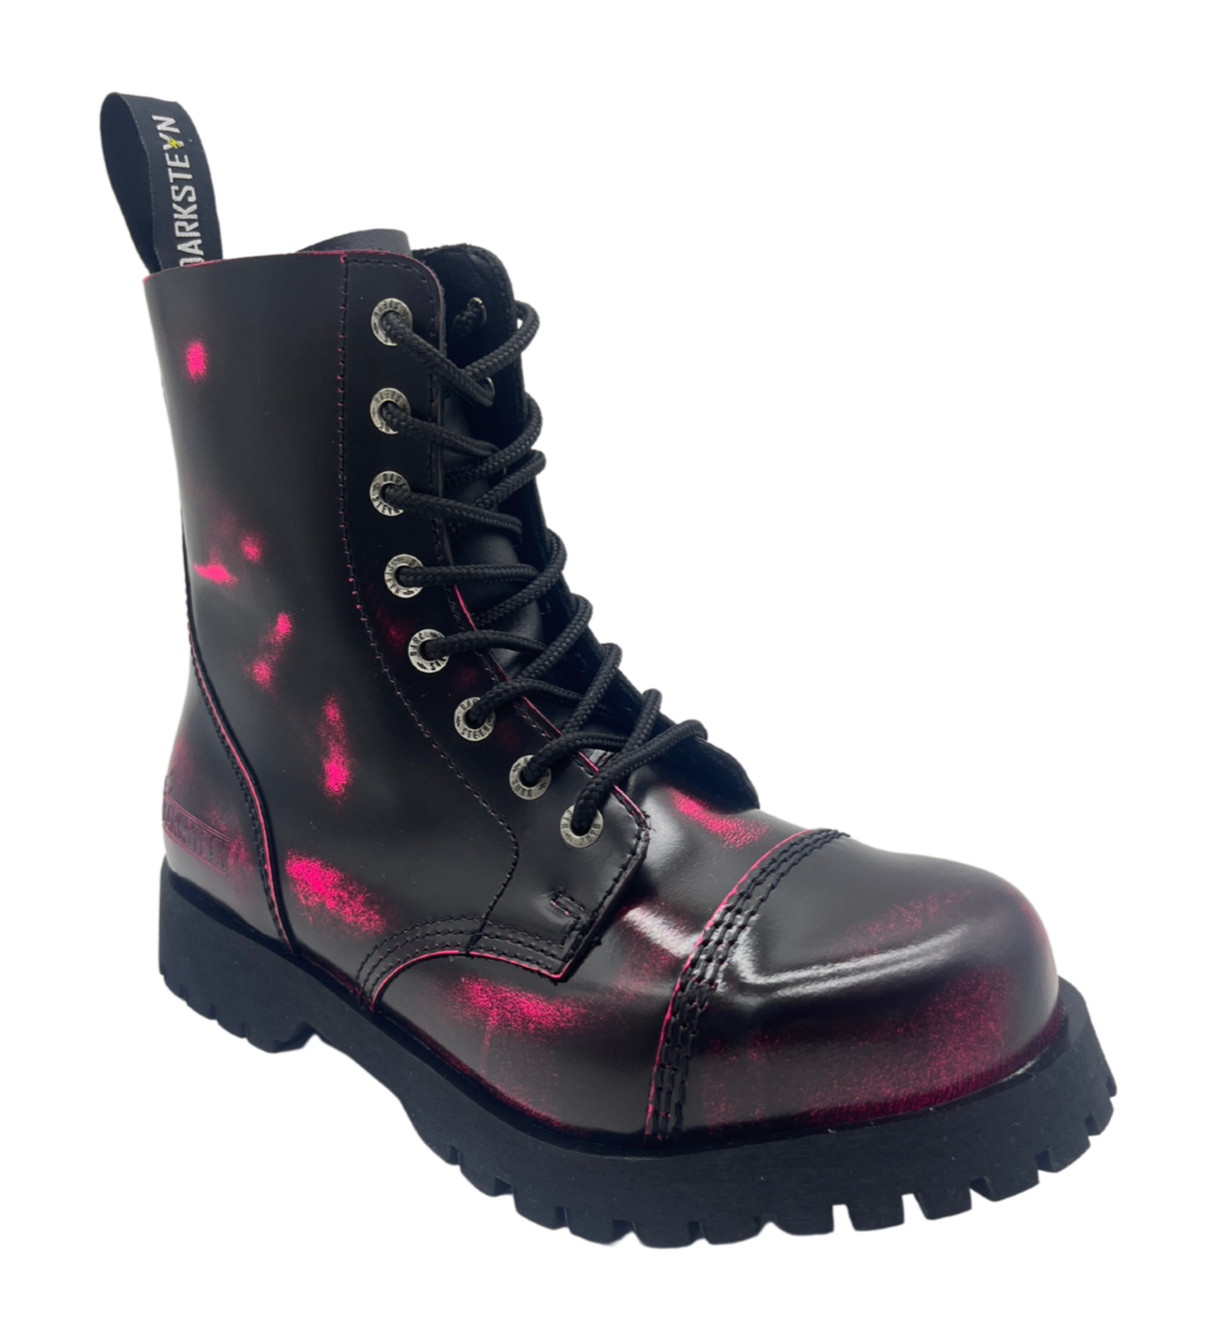 Darksteyn Stiefel Schuhe 8 Eye Ranger Premium Boots Pink Rosa